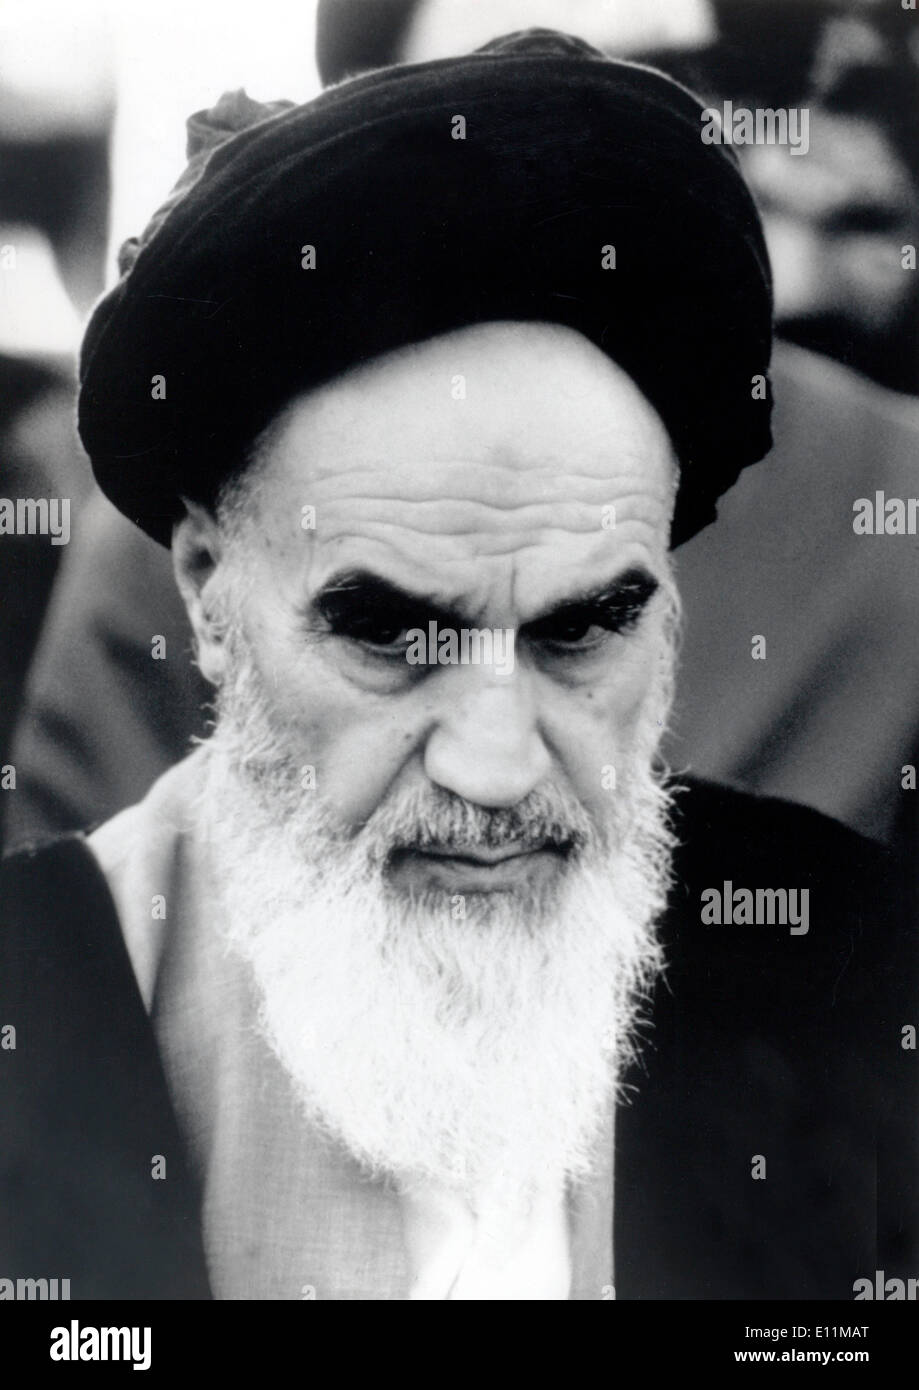 5200182 (900324) beteiligt KHOMEINI (24.09.1902 - 03.06.1989, Ruhollah Mussawi HENDI) Iranischer Religionsf Hrer Und Stockfoto